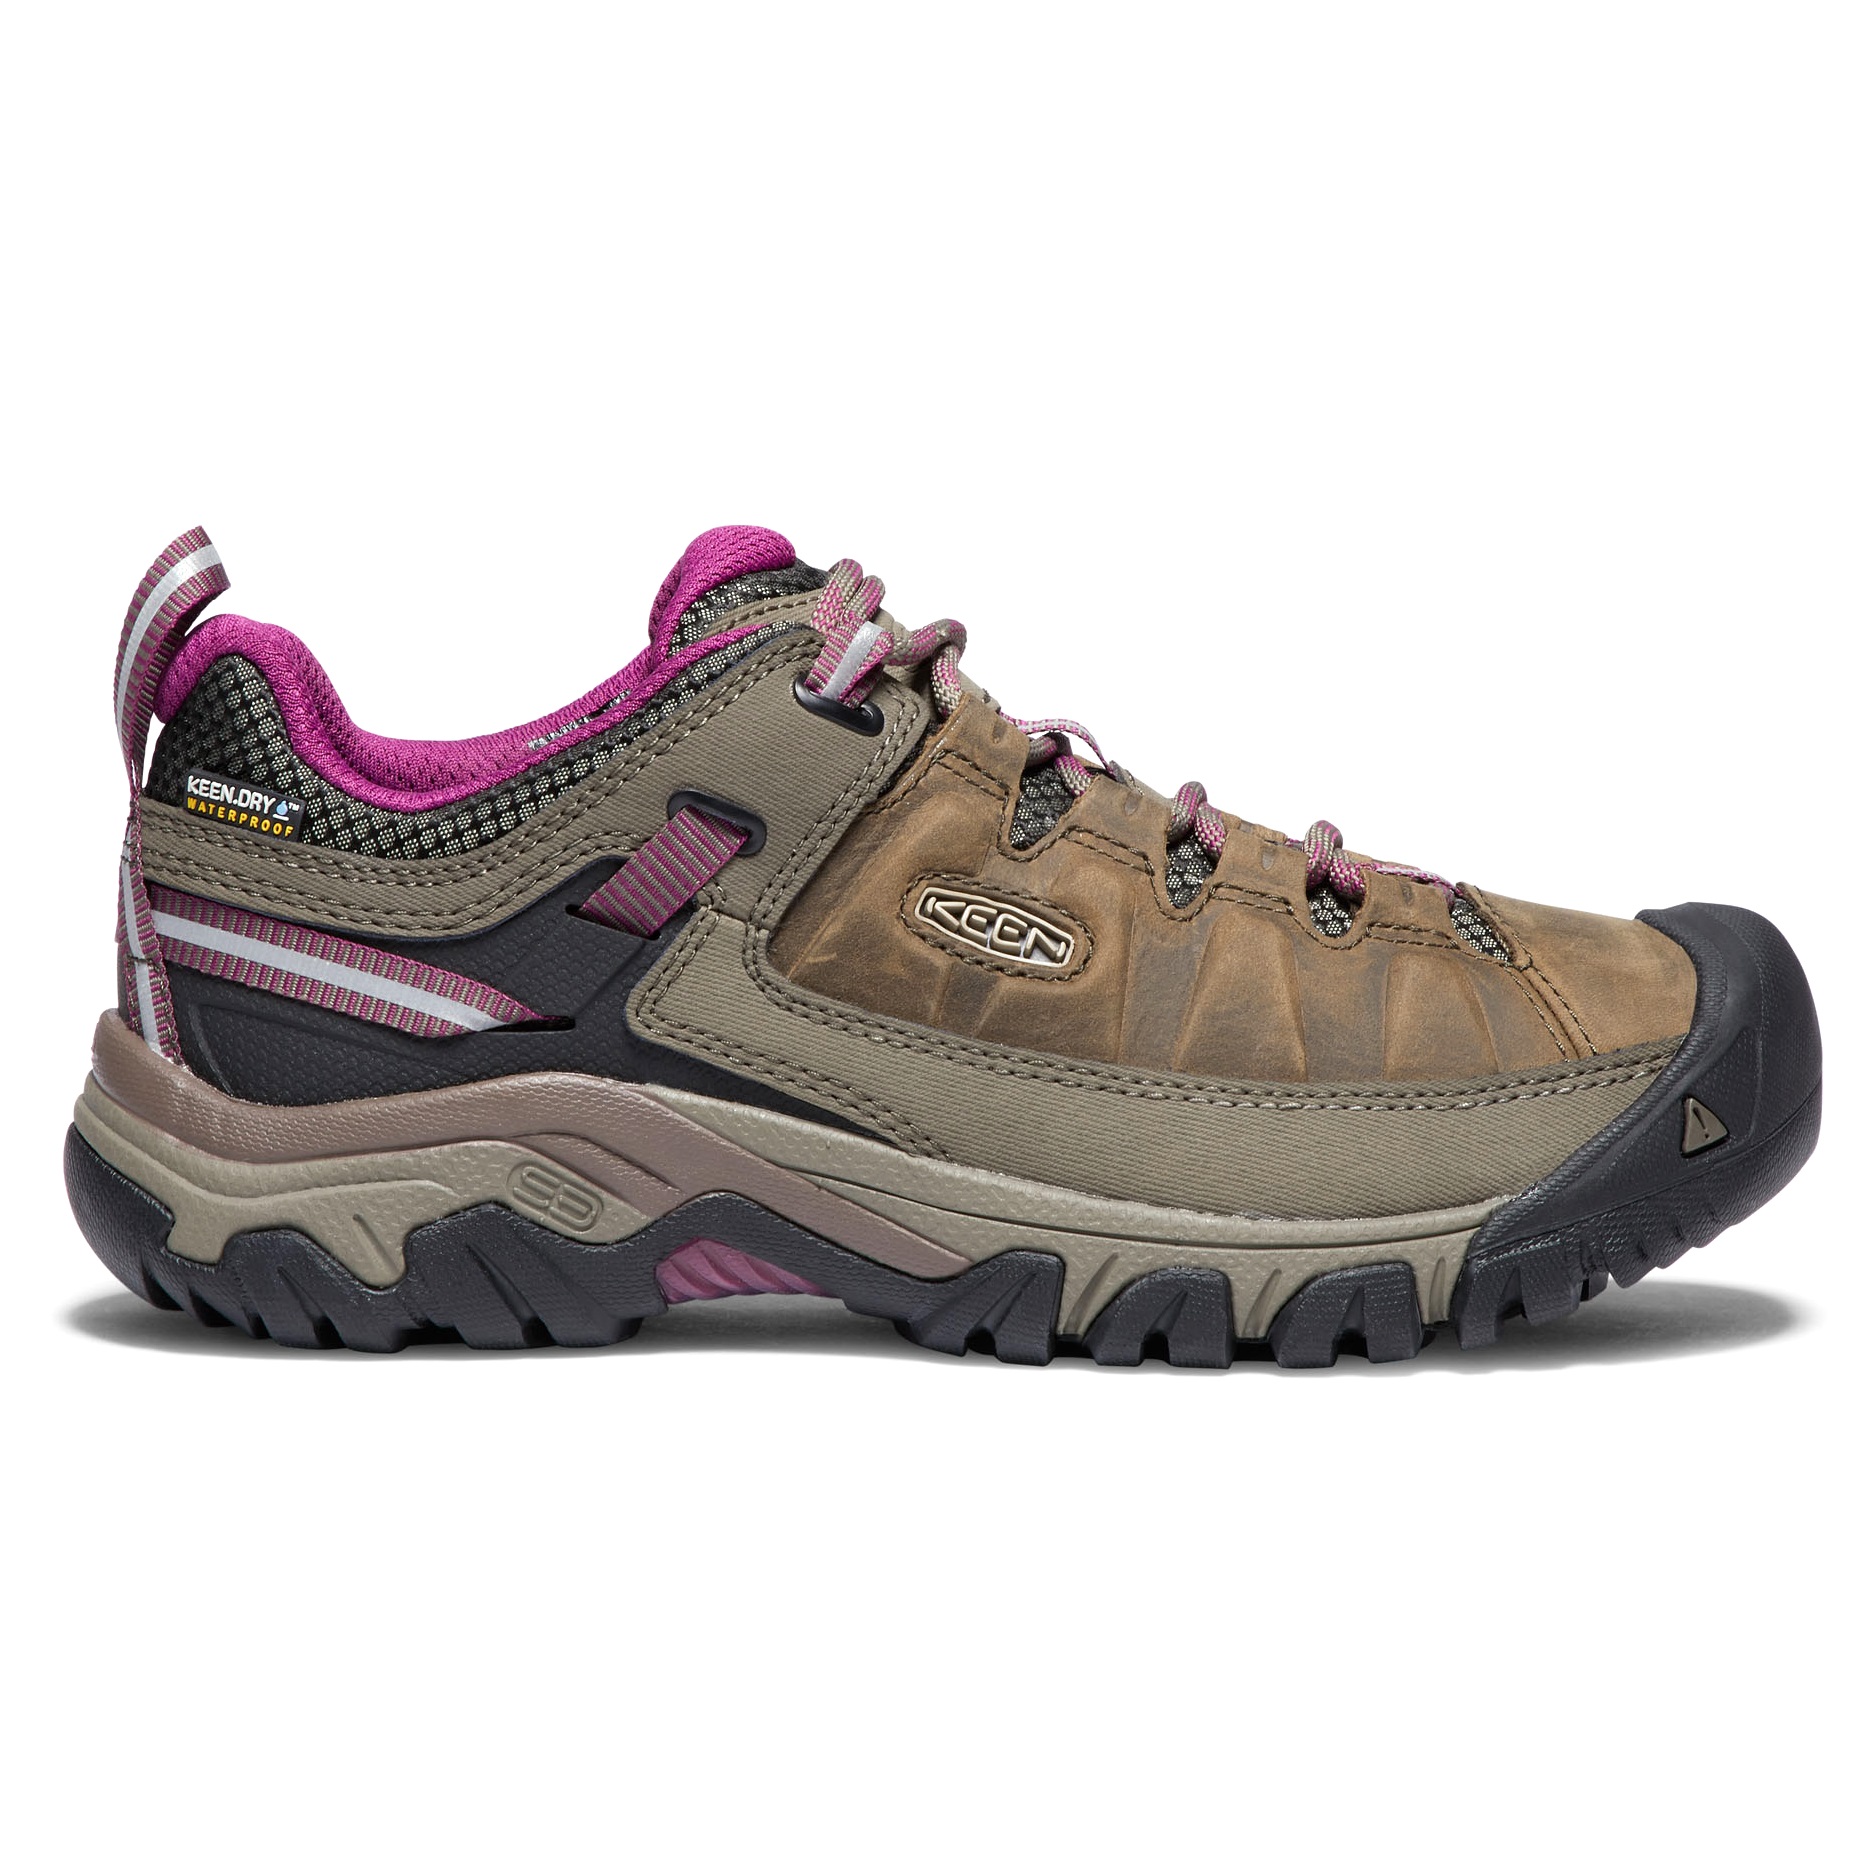 Keen Keen Women's Targhee III Waterproof Hiking Shoes Weiss/Boysenberry 38, Weiss/Boysenberry